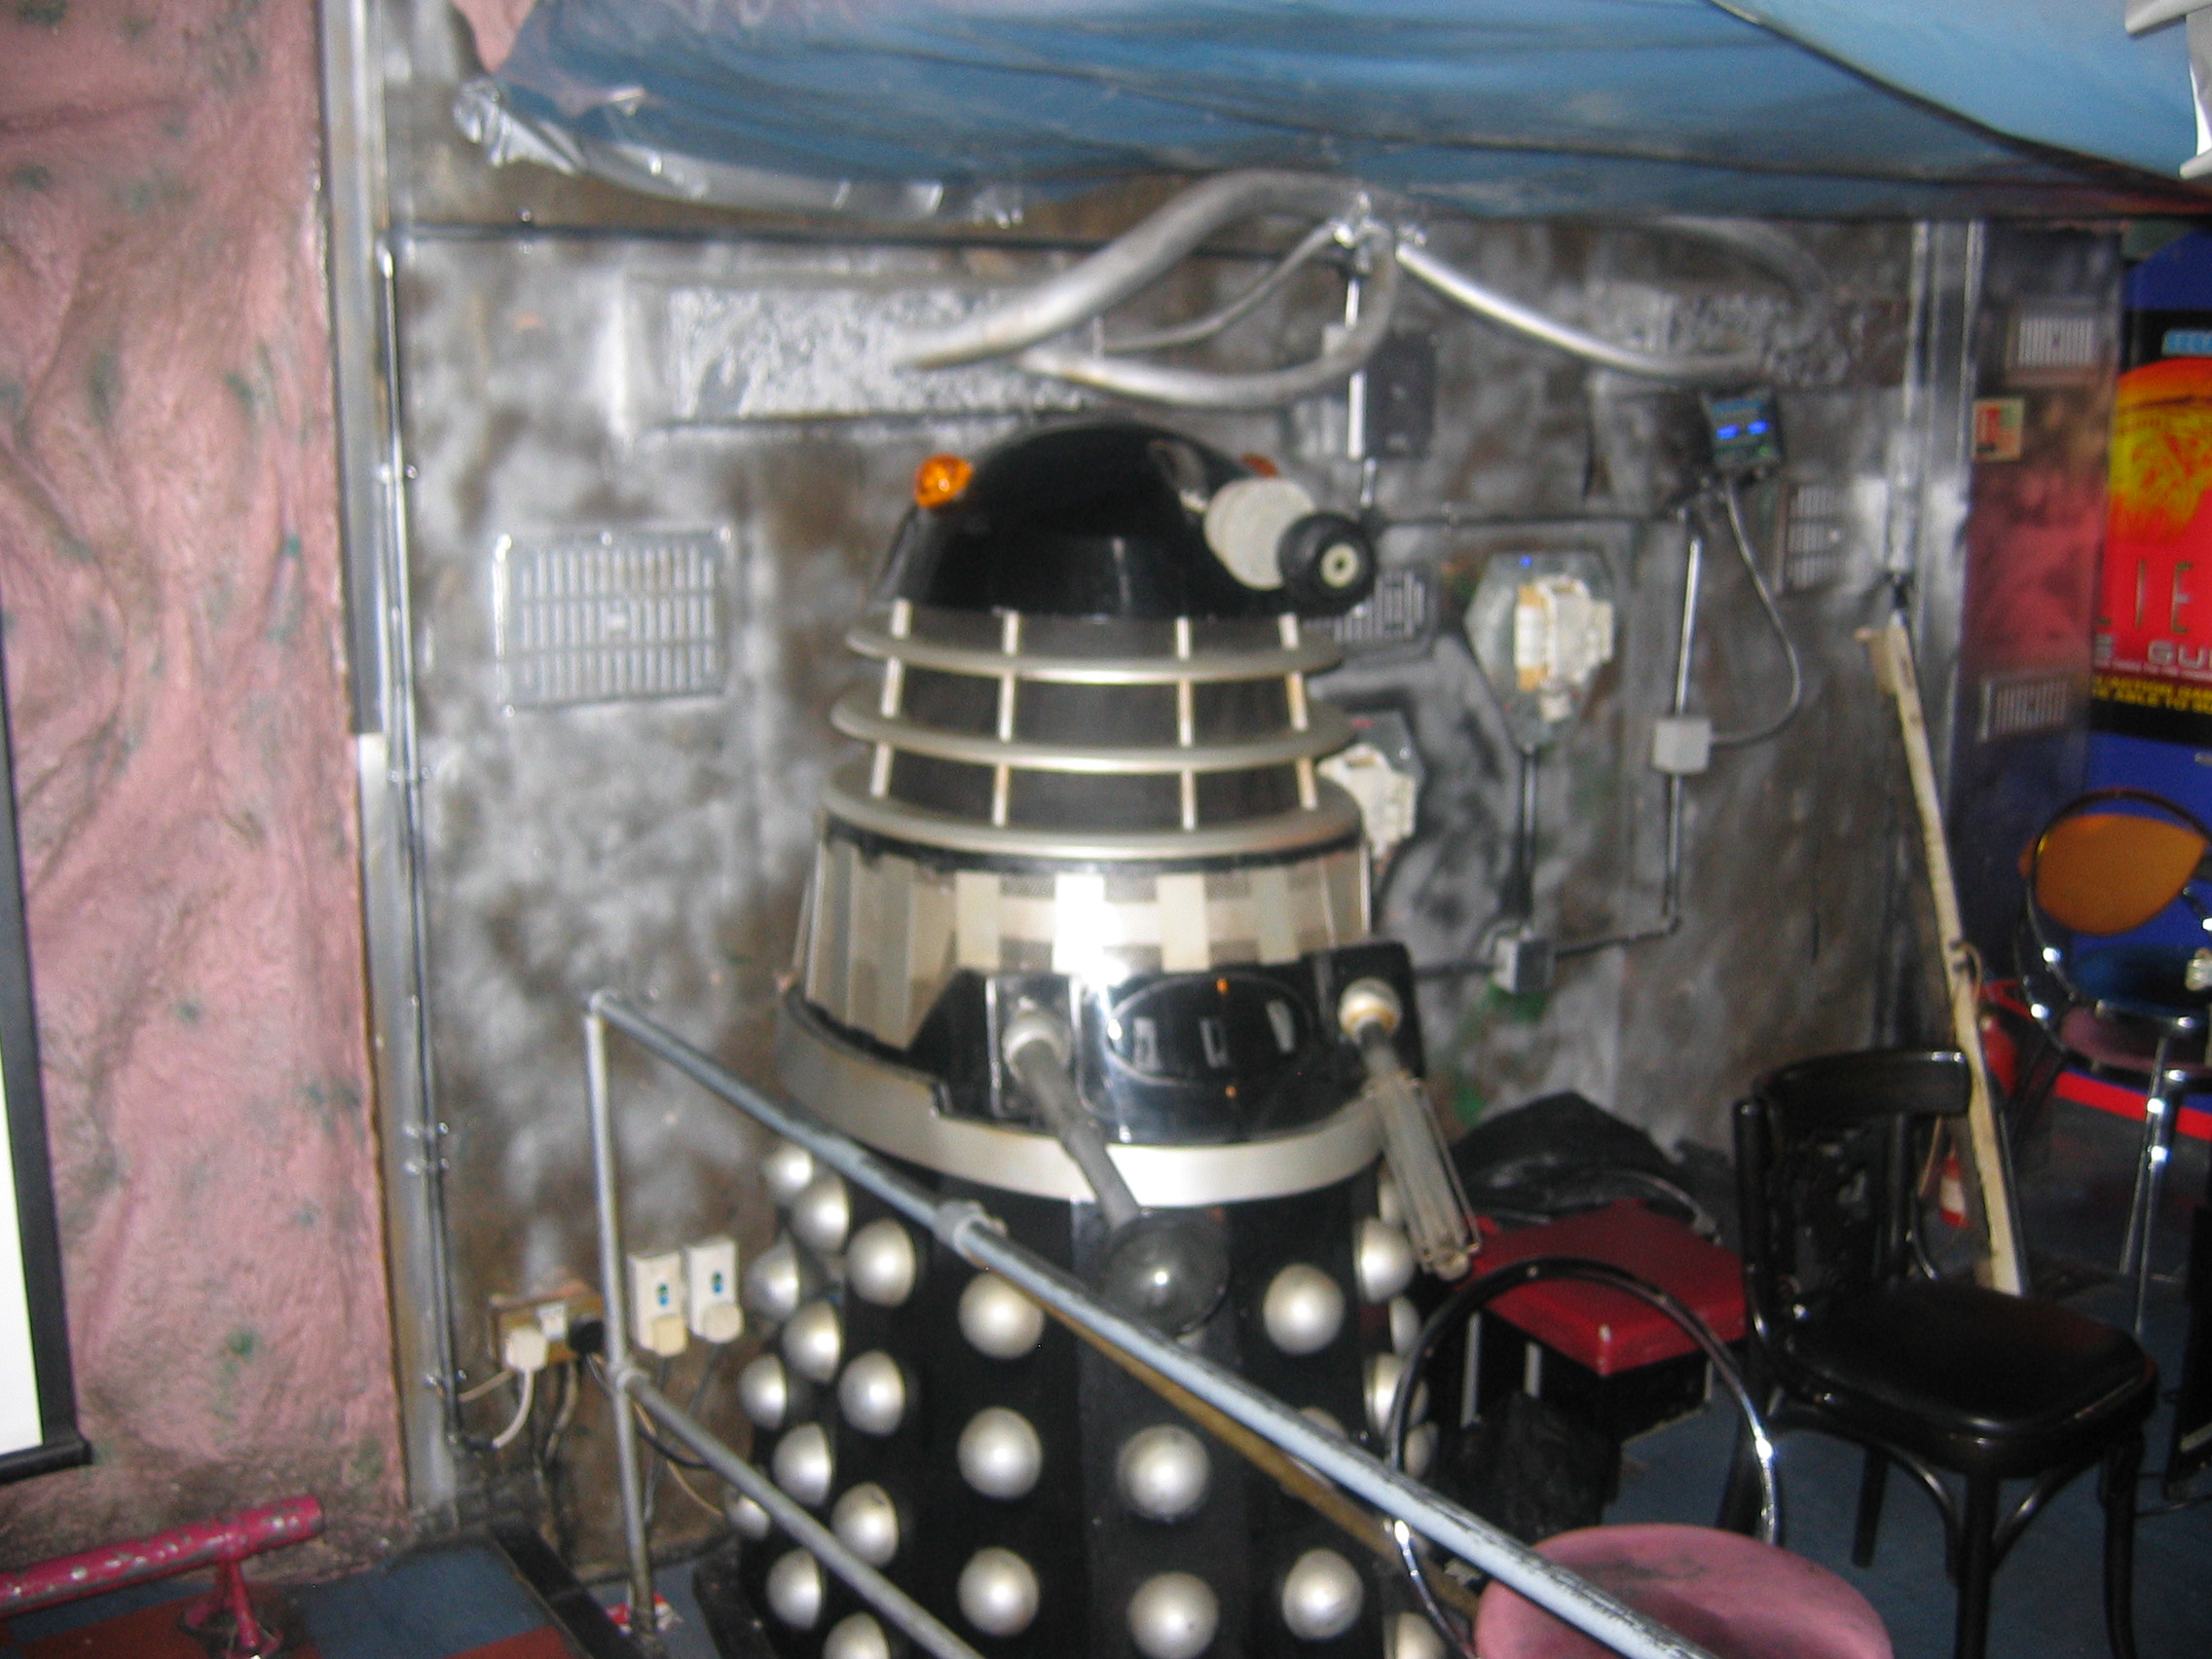 Photo taken by me – Dalek in FAB Café, Manchester  